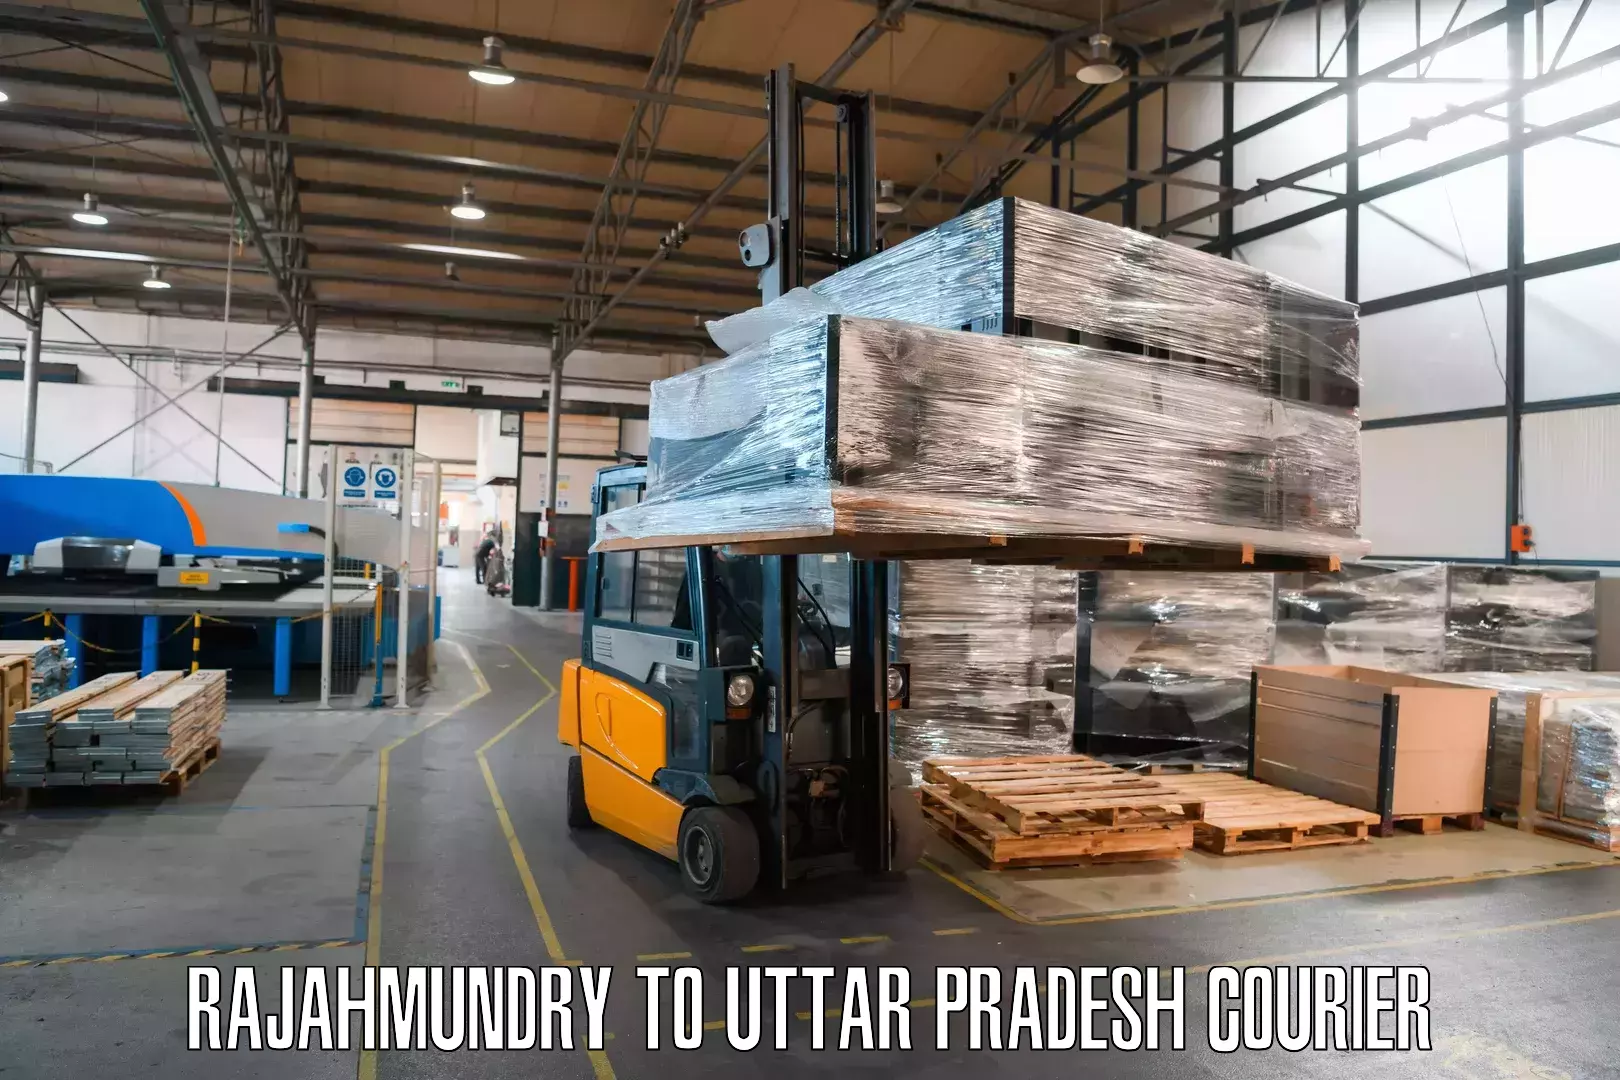 Flexible parcel services Rajahmundry to Unchahar